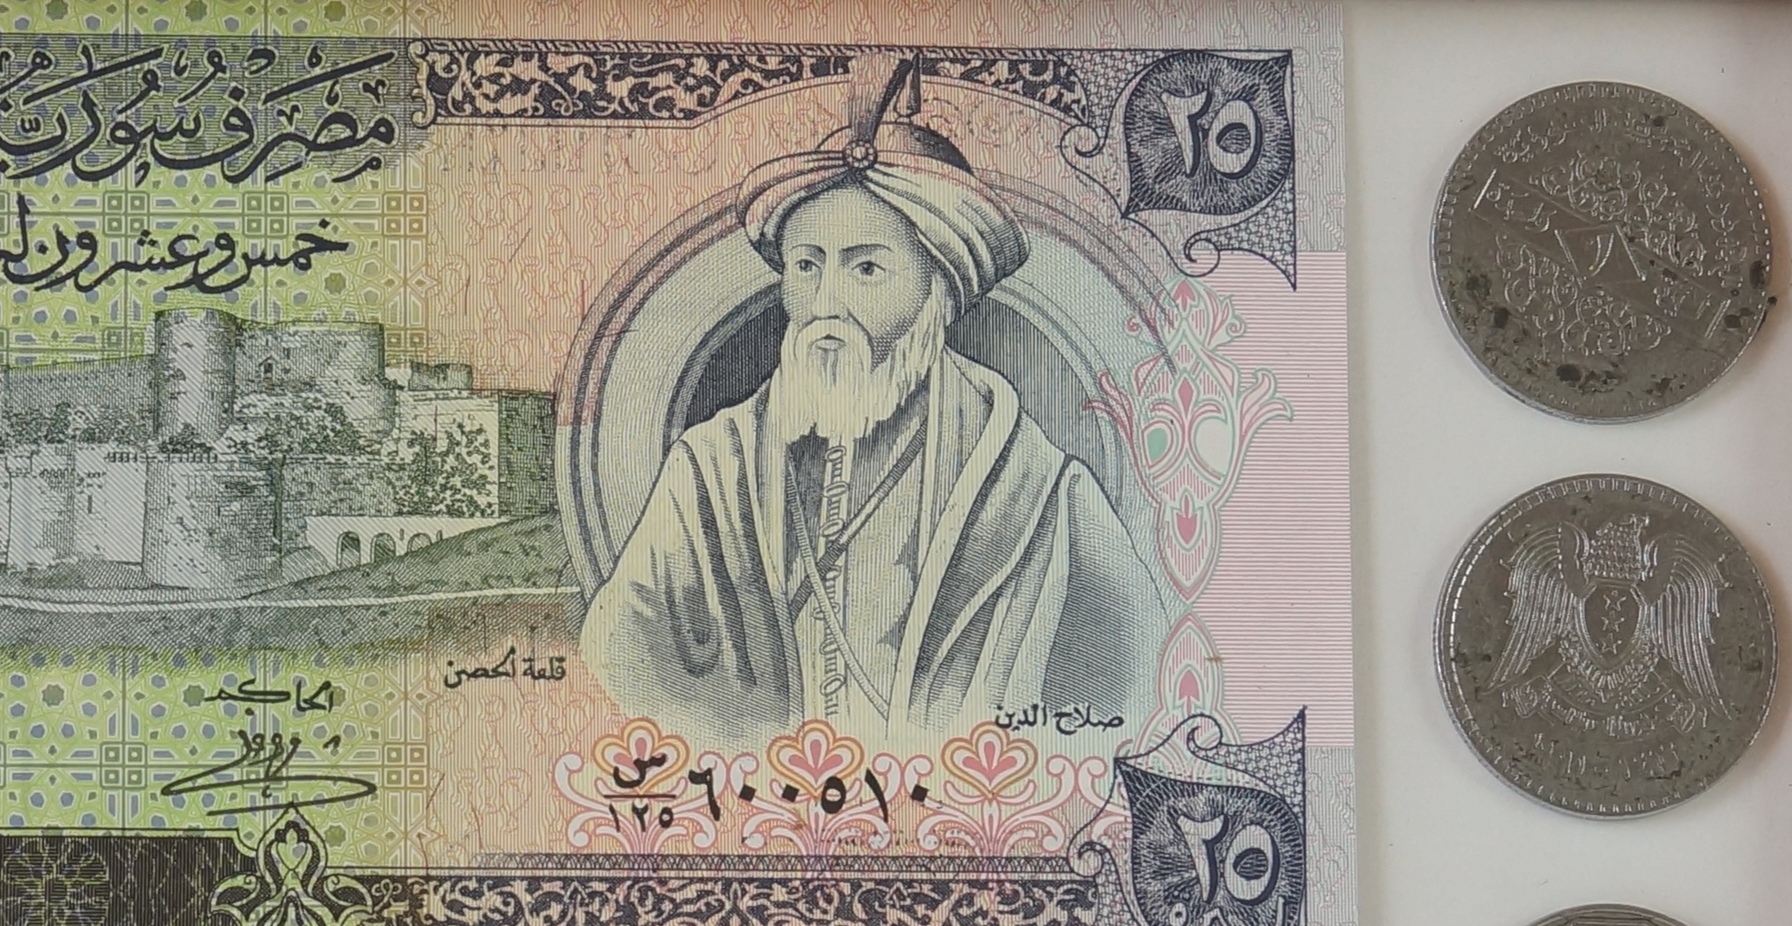 لوحة خشبية من القطع النقدية الورقية والمعدنية 1990